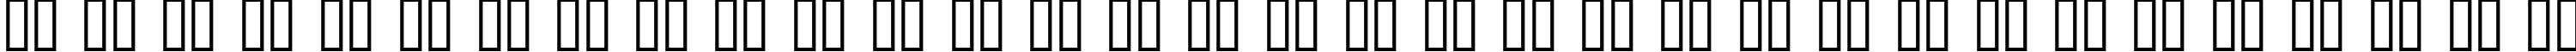 Пример написания русского алфавита шрифтом Pamela